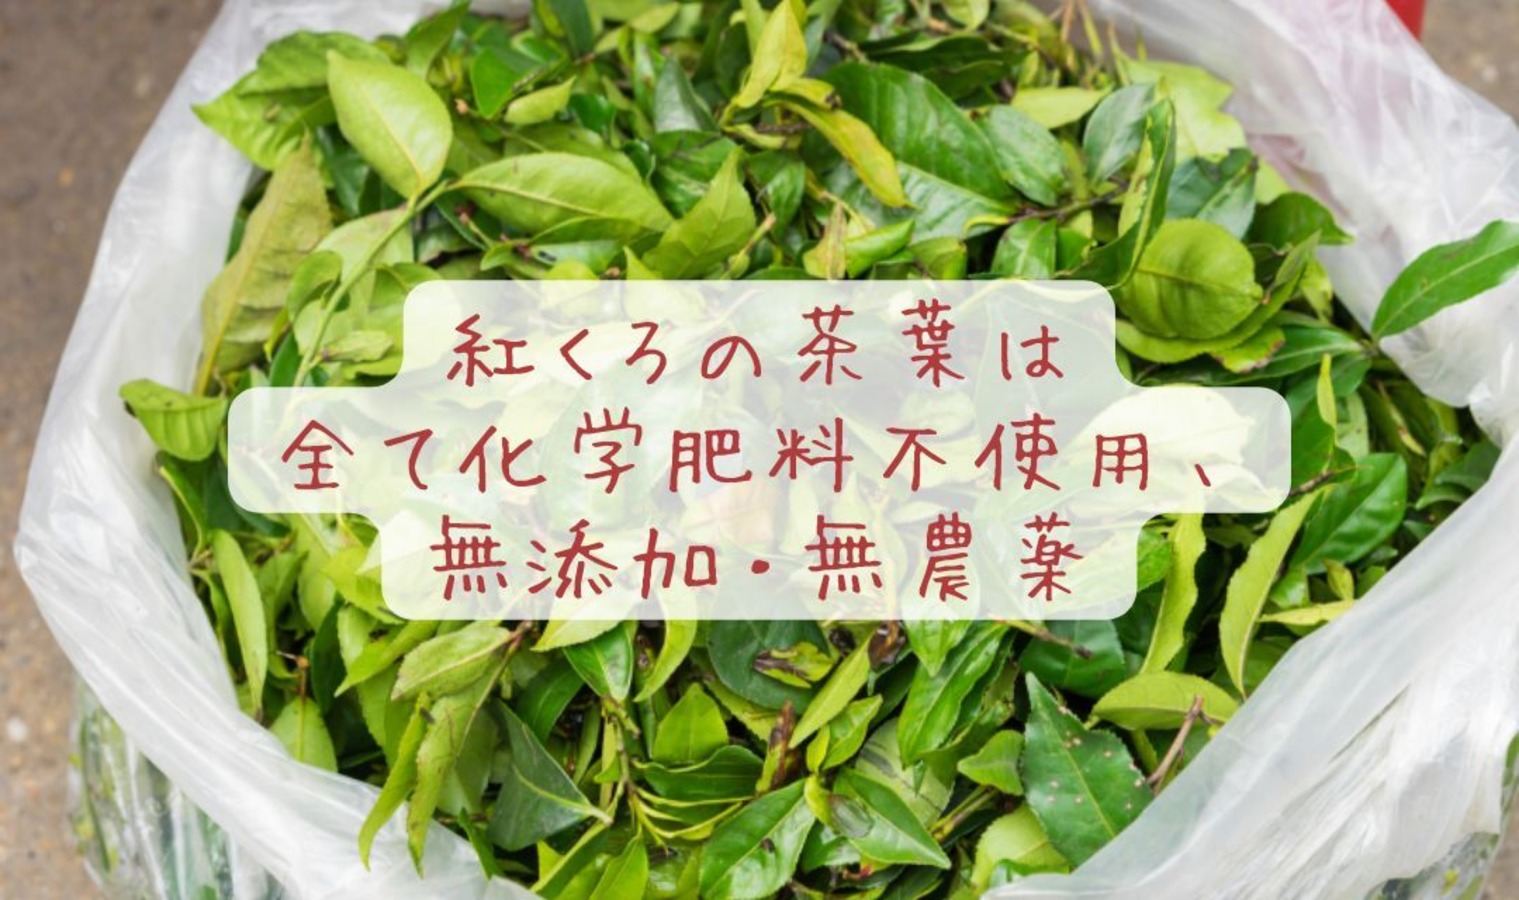 紅くろのお茶は、全て無添加・無香料・無農薬・化学肥料不使用